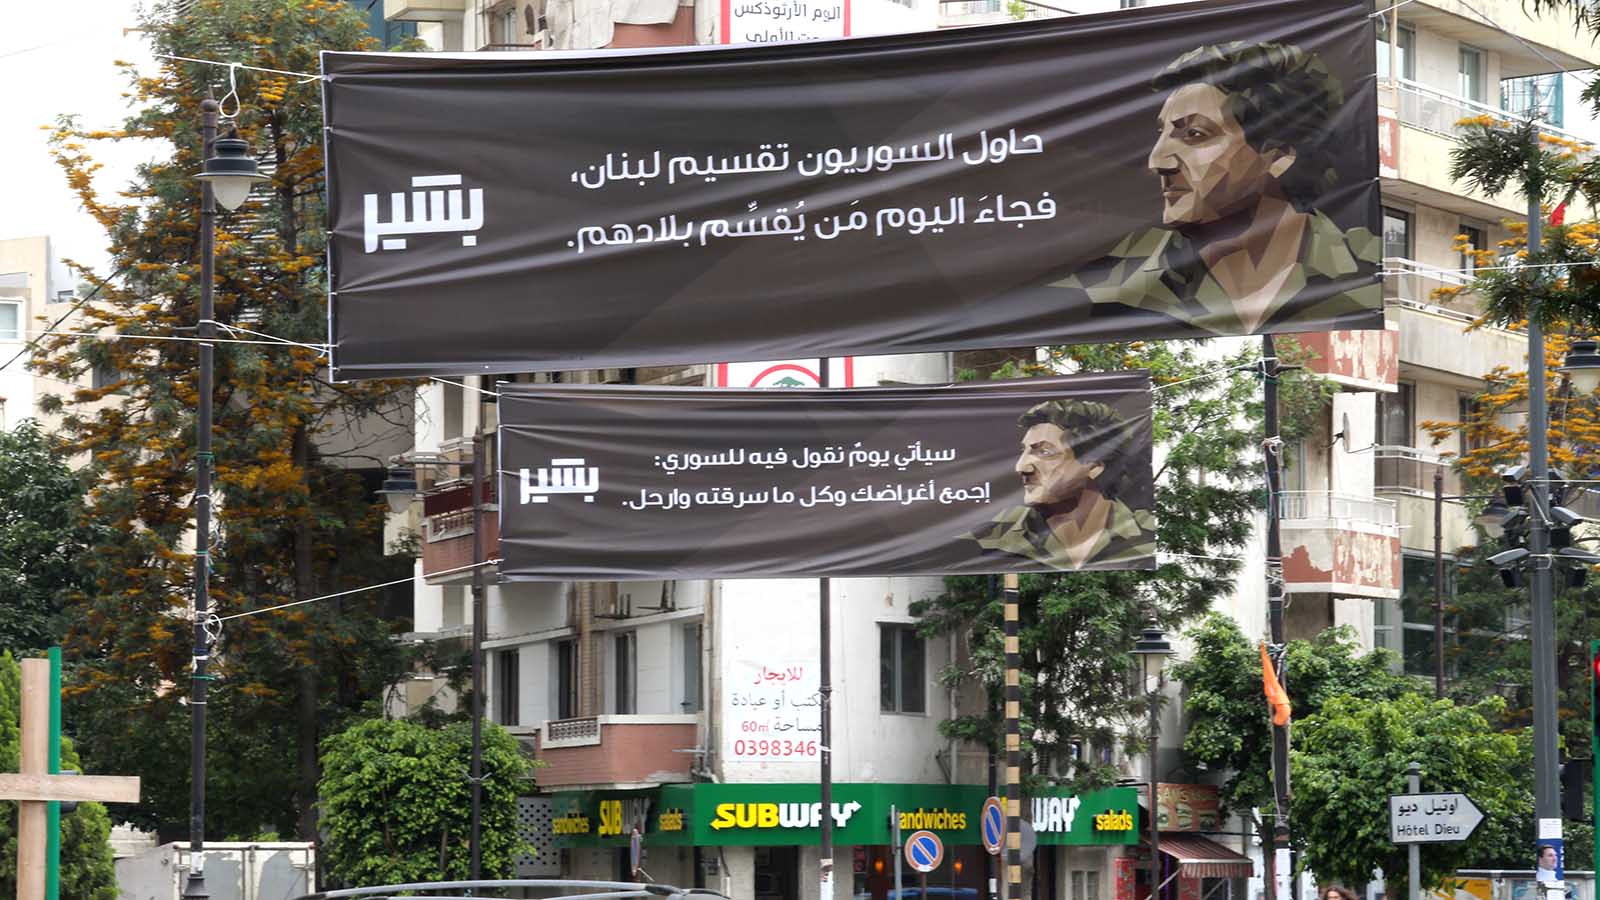 الأشرفية:لافتات تدعو "السوري" إلى الرحيل